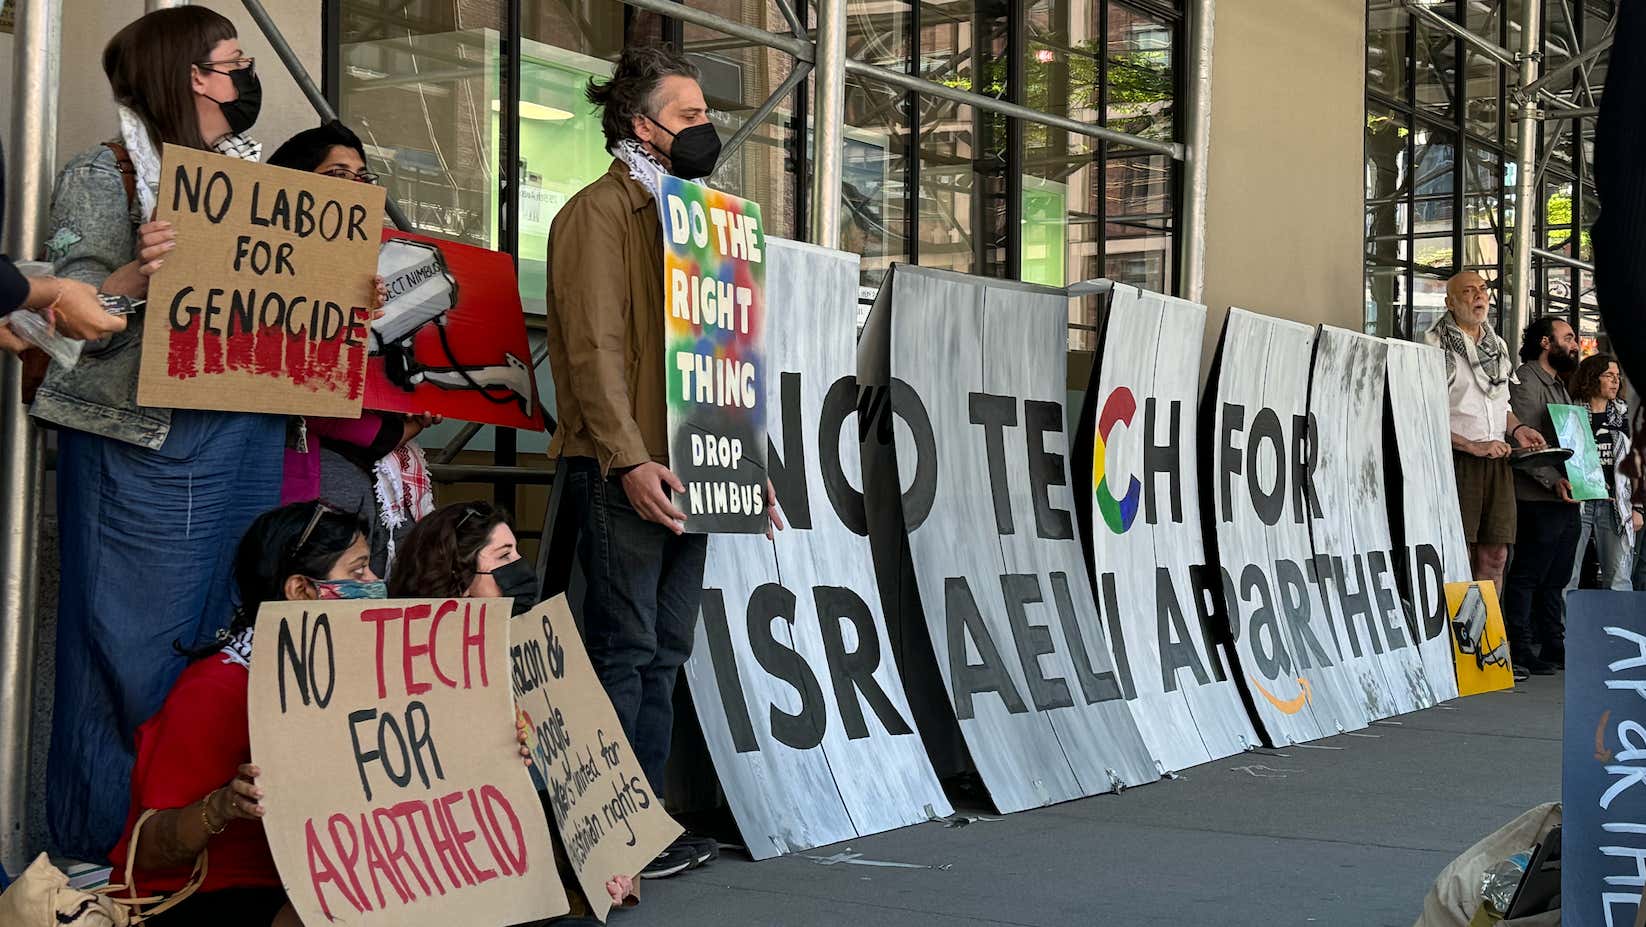 Google, İsrail ile Yaptığı Sözleşmeleri Protesto Eden 28 İşçiyi İşten Çıkardı başlıklı makalenin resmi